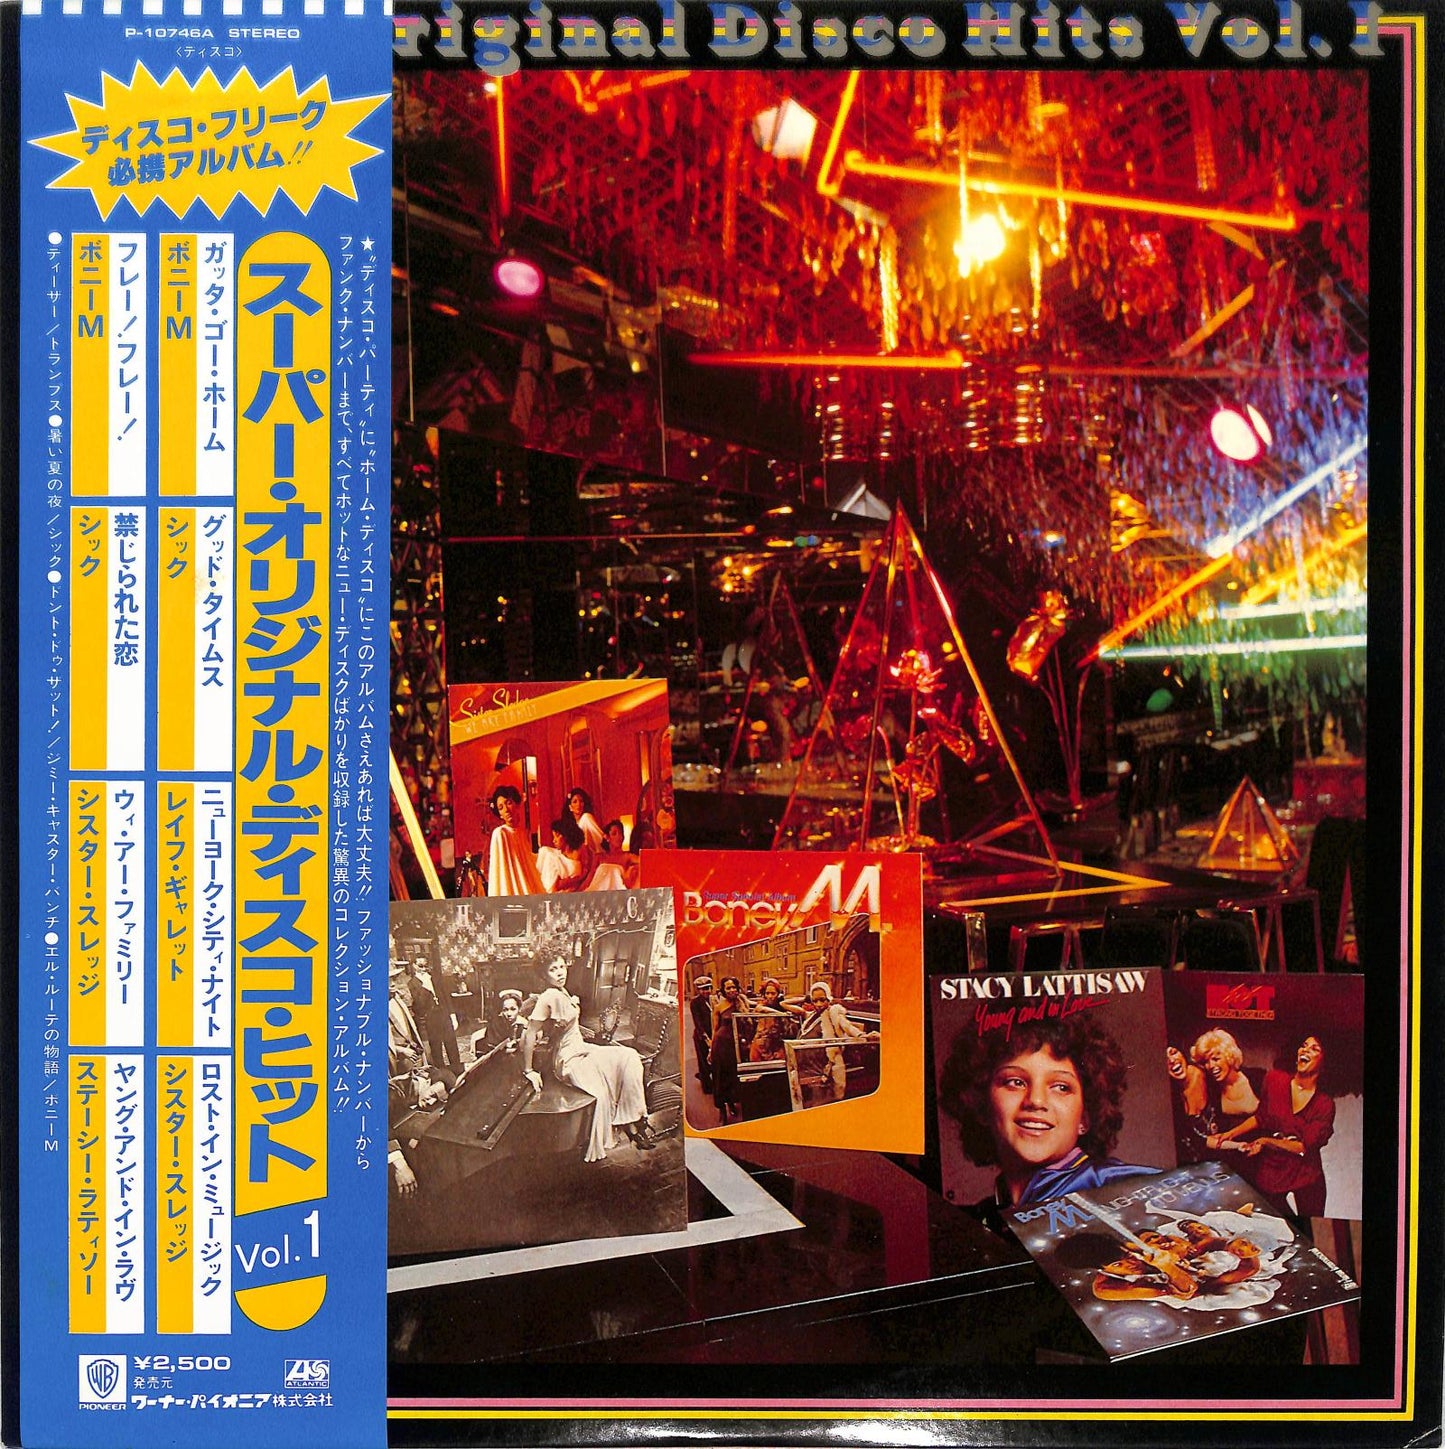 VA - Super Original Disco Hits Vol. 1